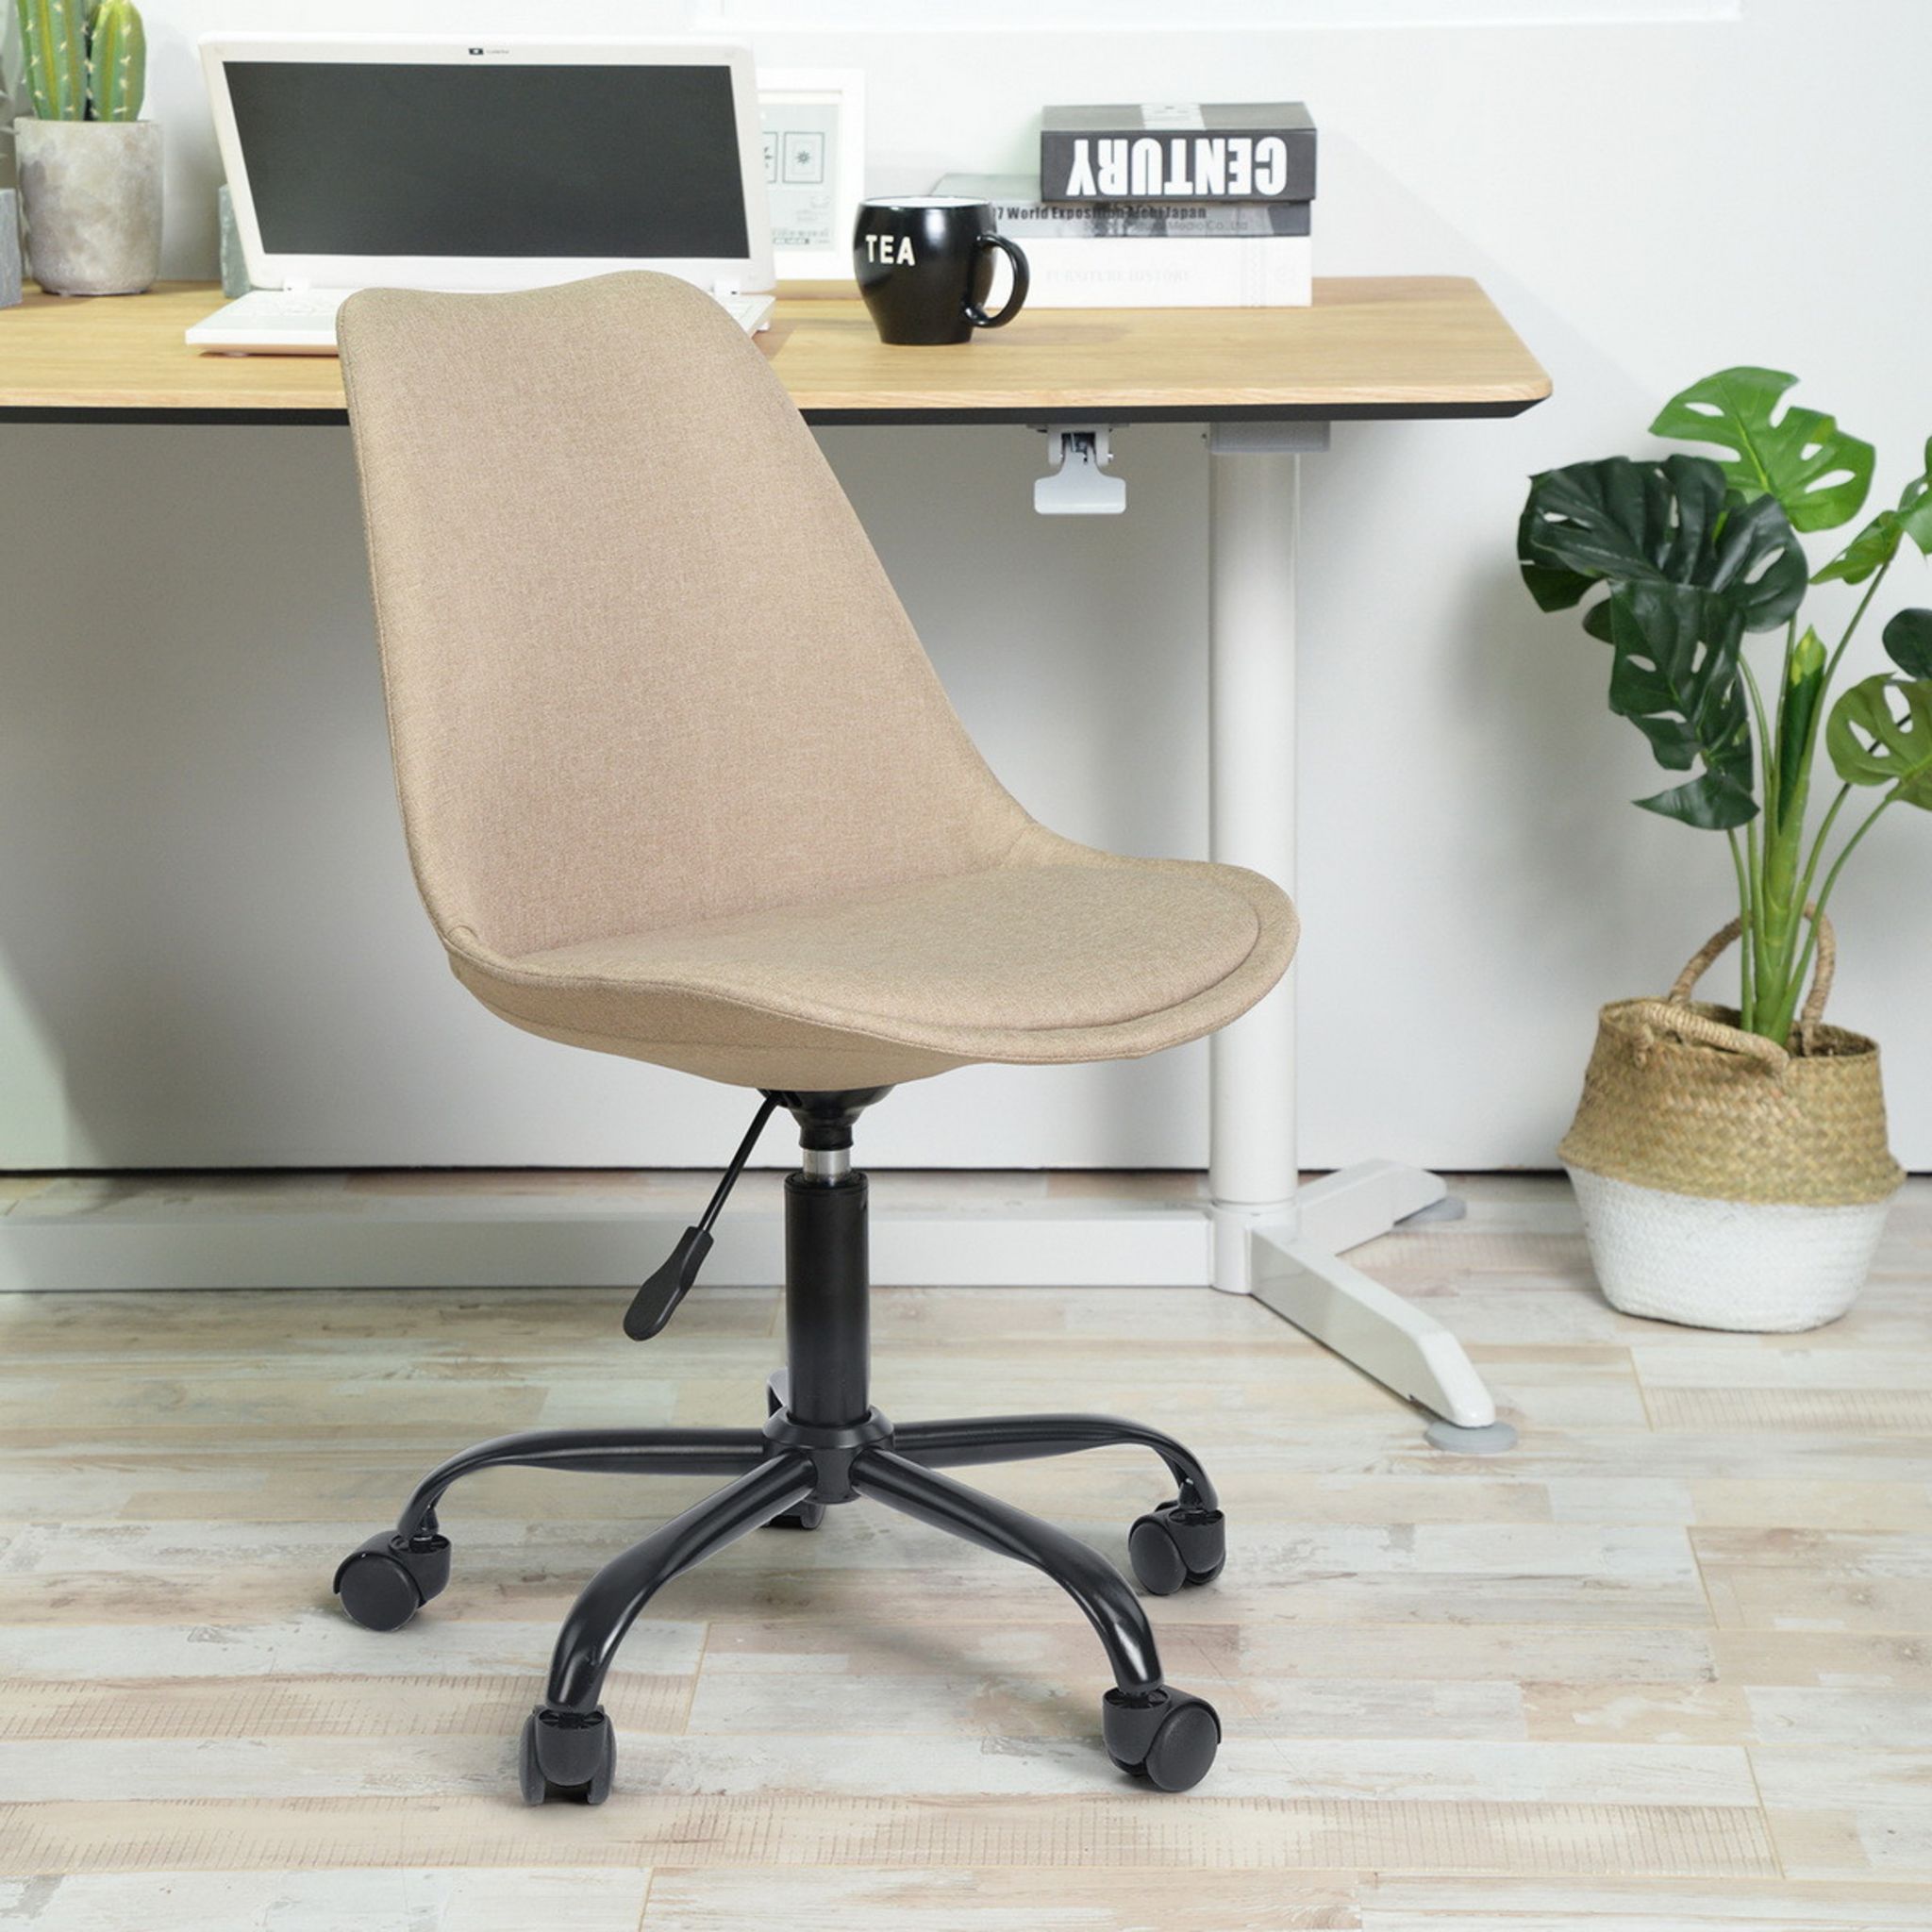 Chaise d'ordinateur de bureau en tissu Beige blanc, avec accoudoir  rabattable, avec roulettes, inclinaison réglable